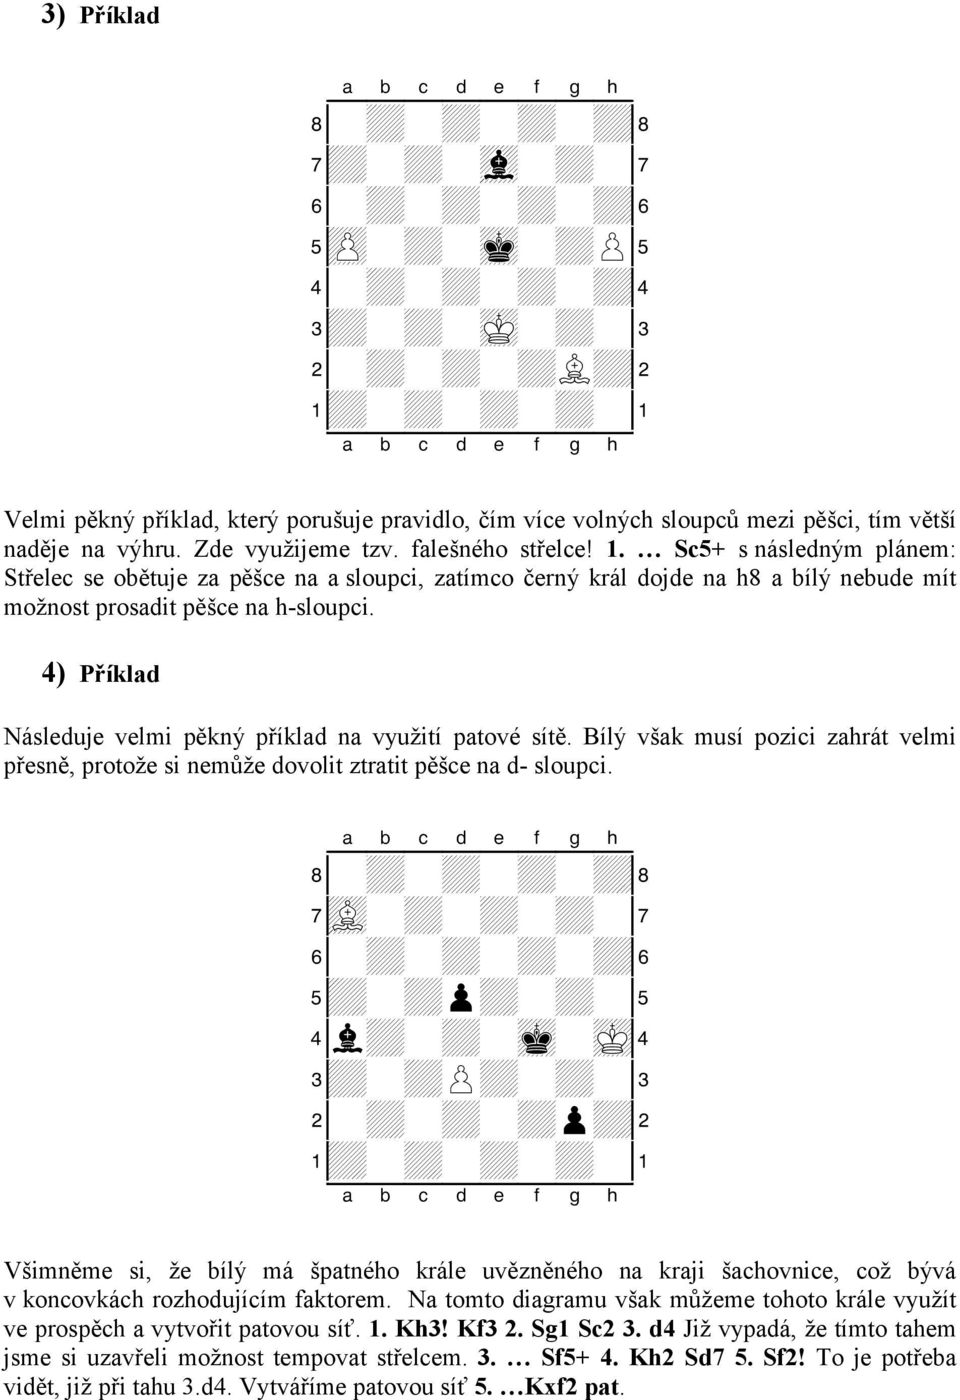 4) Příklad Následuje velmi pěkný příklad na využití patové sítě. Bílý však musí pozici zahrát velmi přesně, protože si nemůže dovolit ztratit pěšce na d- sloupci.